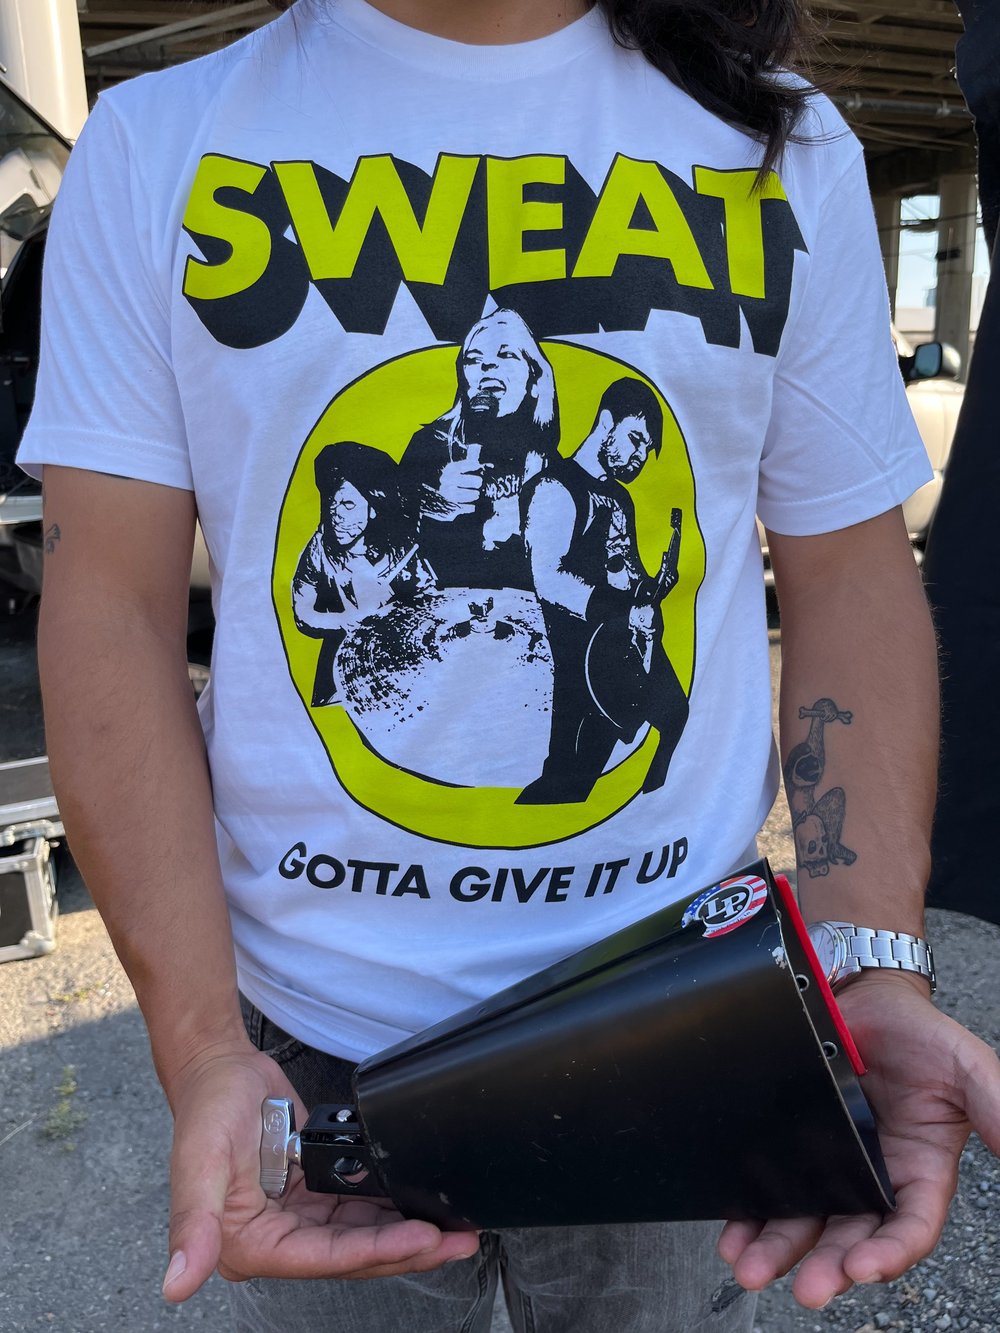 SWEAT "Gotta Give It Up" Shirt $20